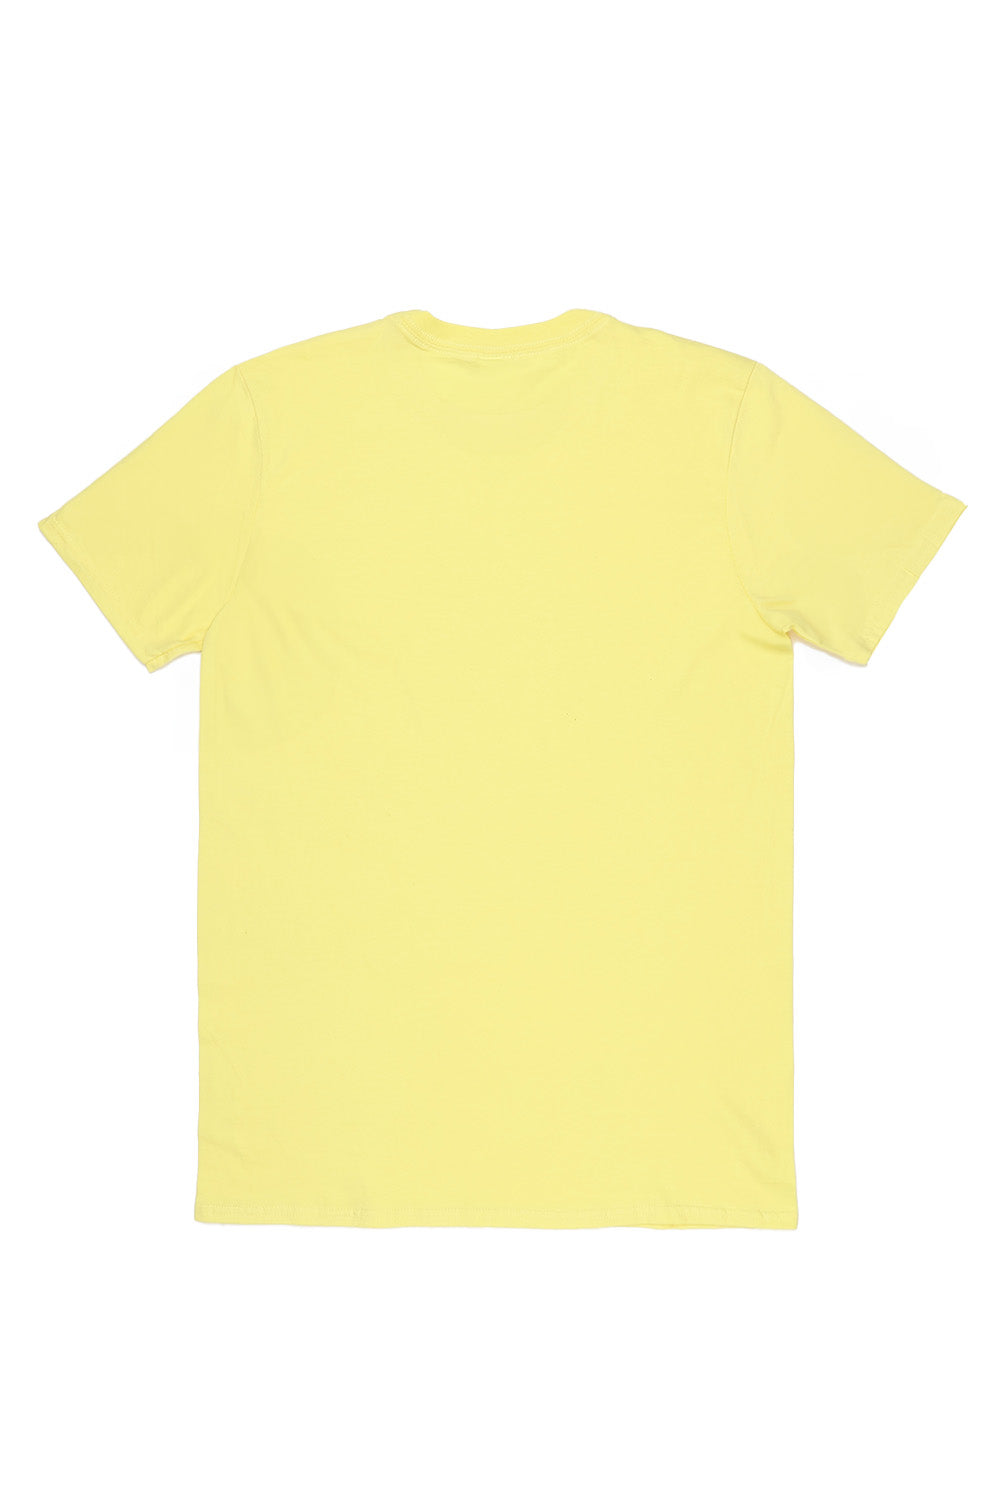 Manhattan T-Shirt in Yellow (Custom Packs)